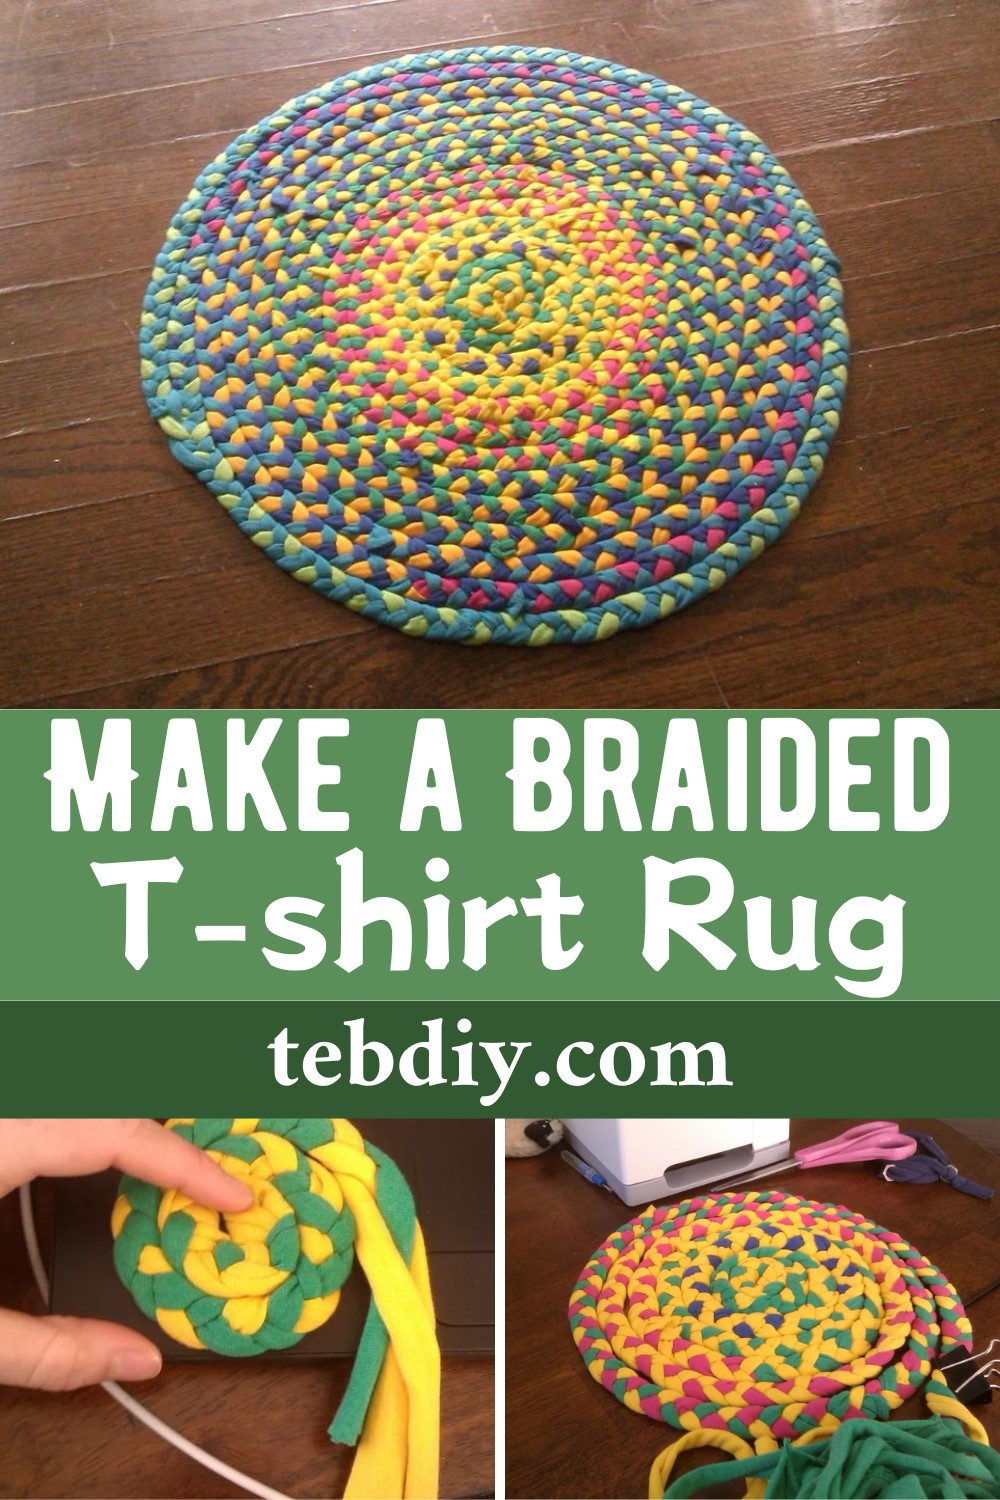 Make a Braided T-shirt Rug